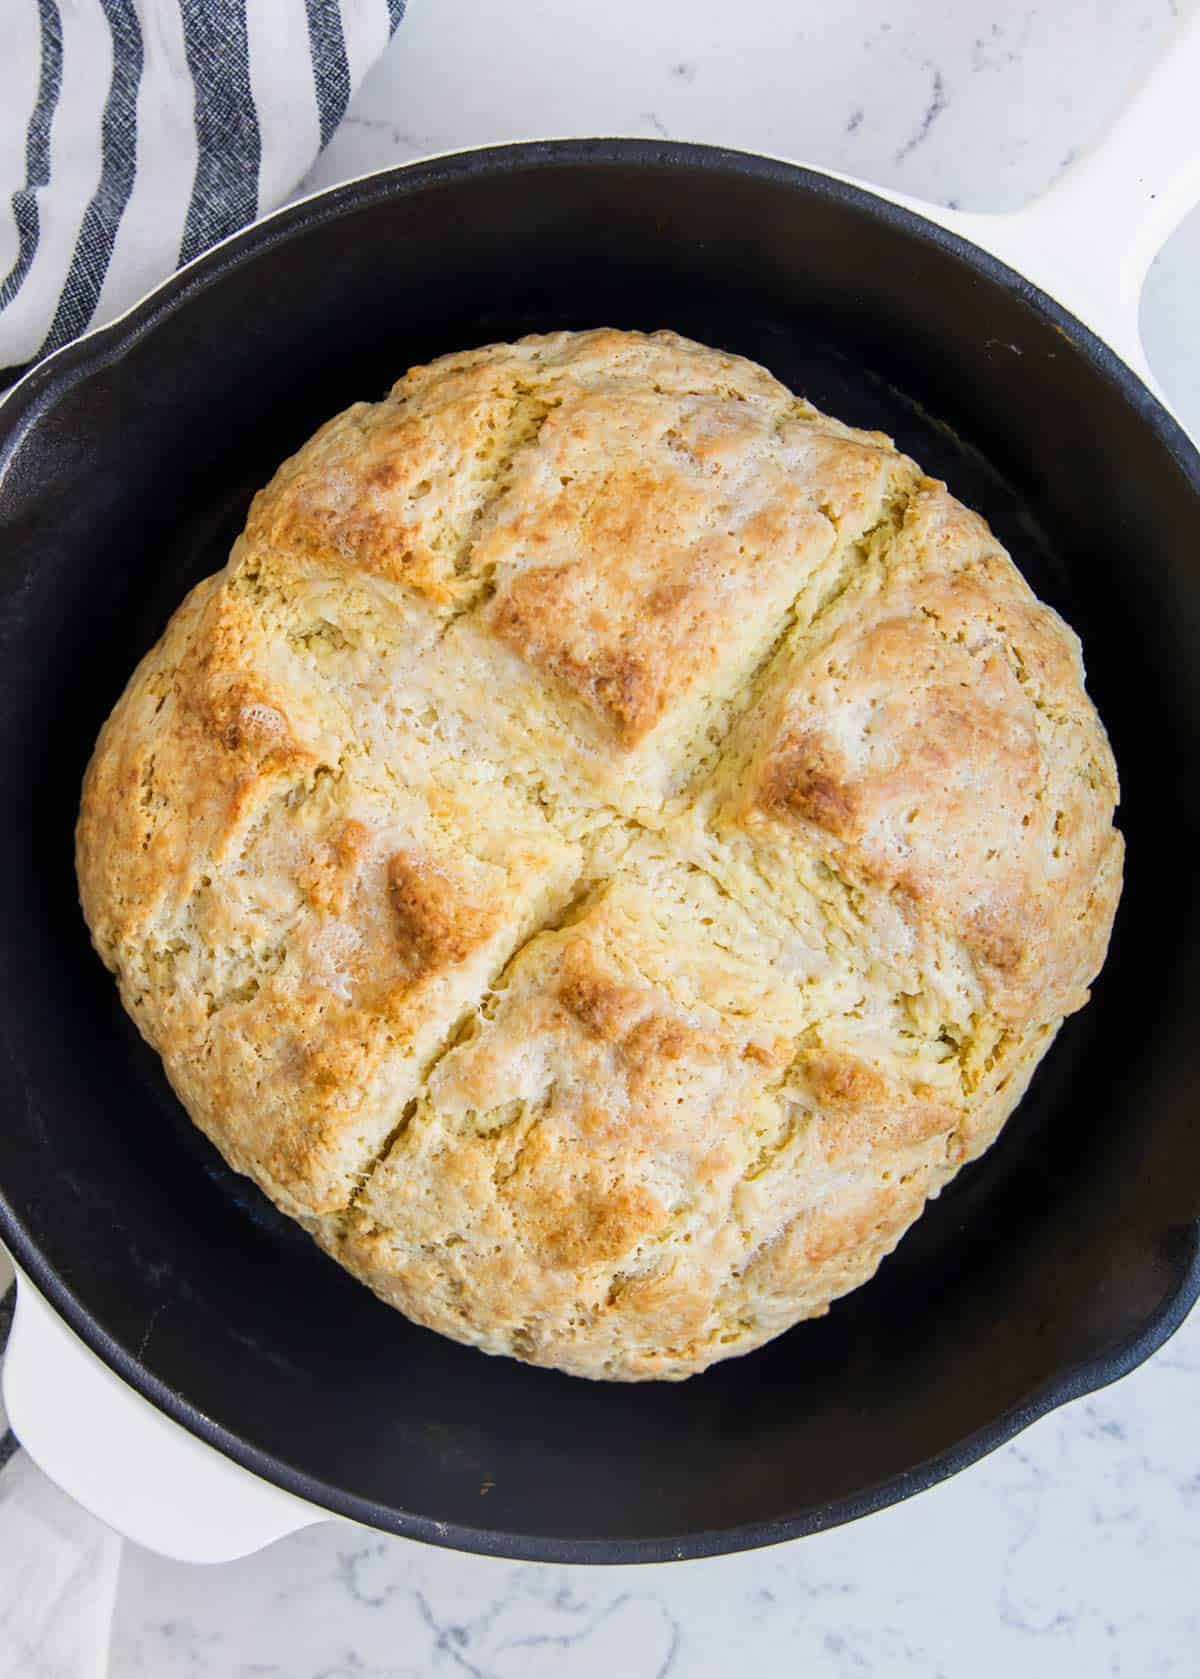 Irish soda bread recipe in a pan.